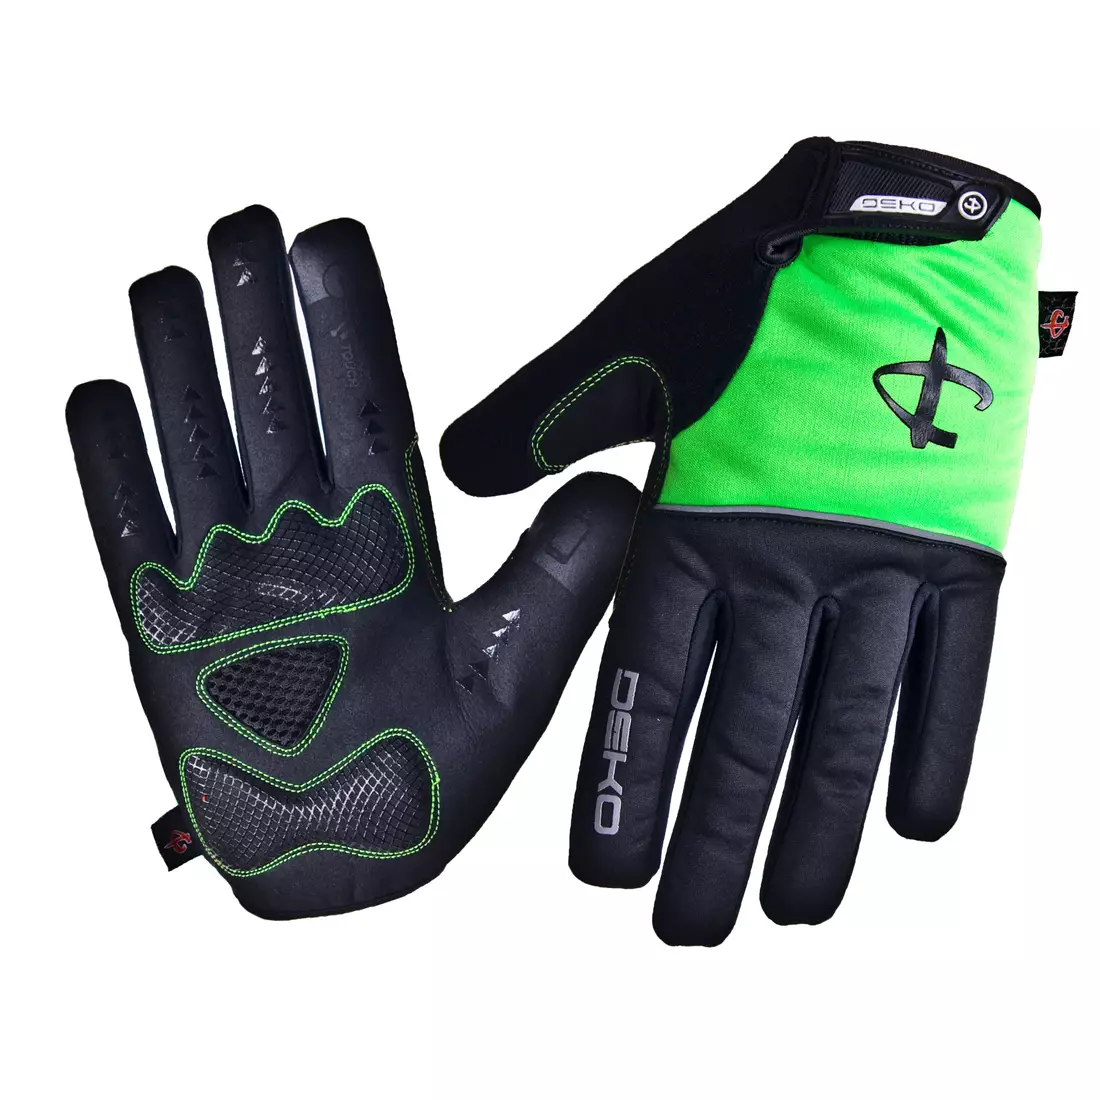 DEKO ROST mănuși de iarnă pentru ciclism negru-verde fluor DKWG-0715-006A